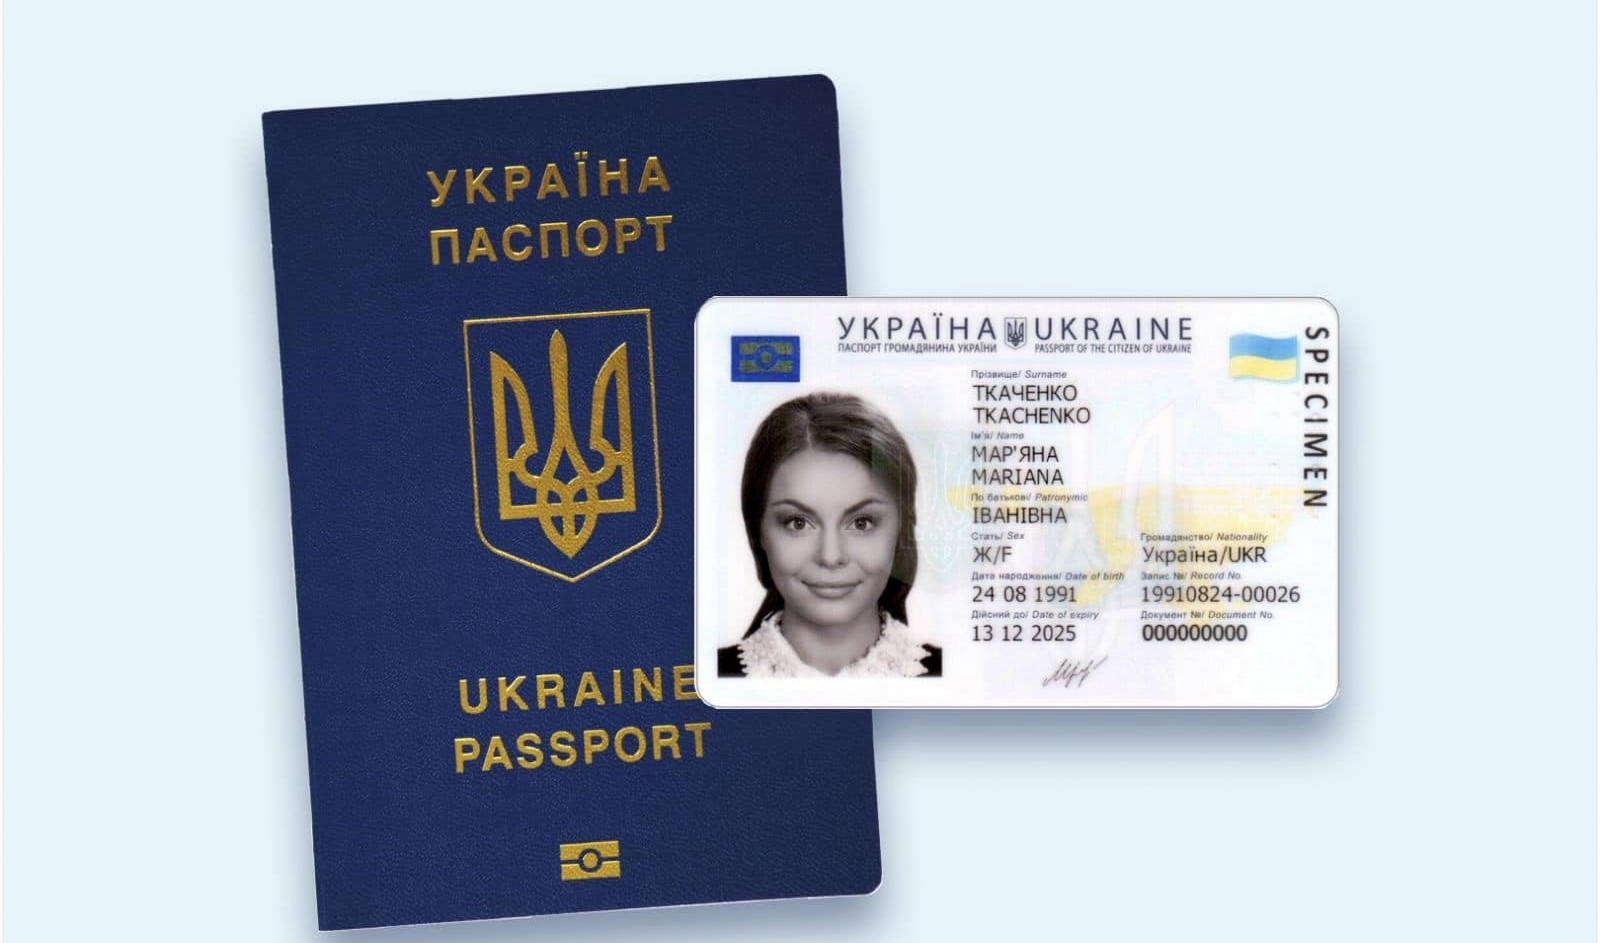 Від сьогодні ID-картку і закордонний паспорт можна оформити одночасно